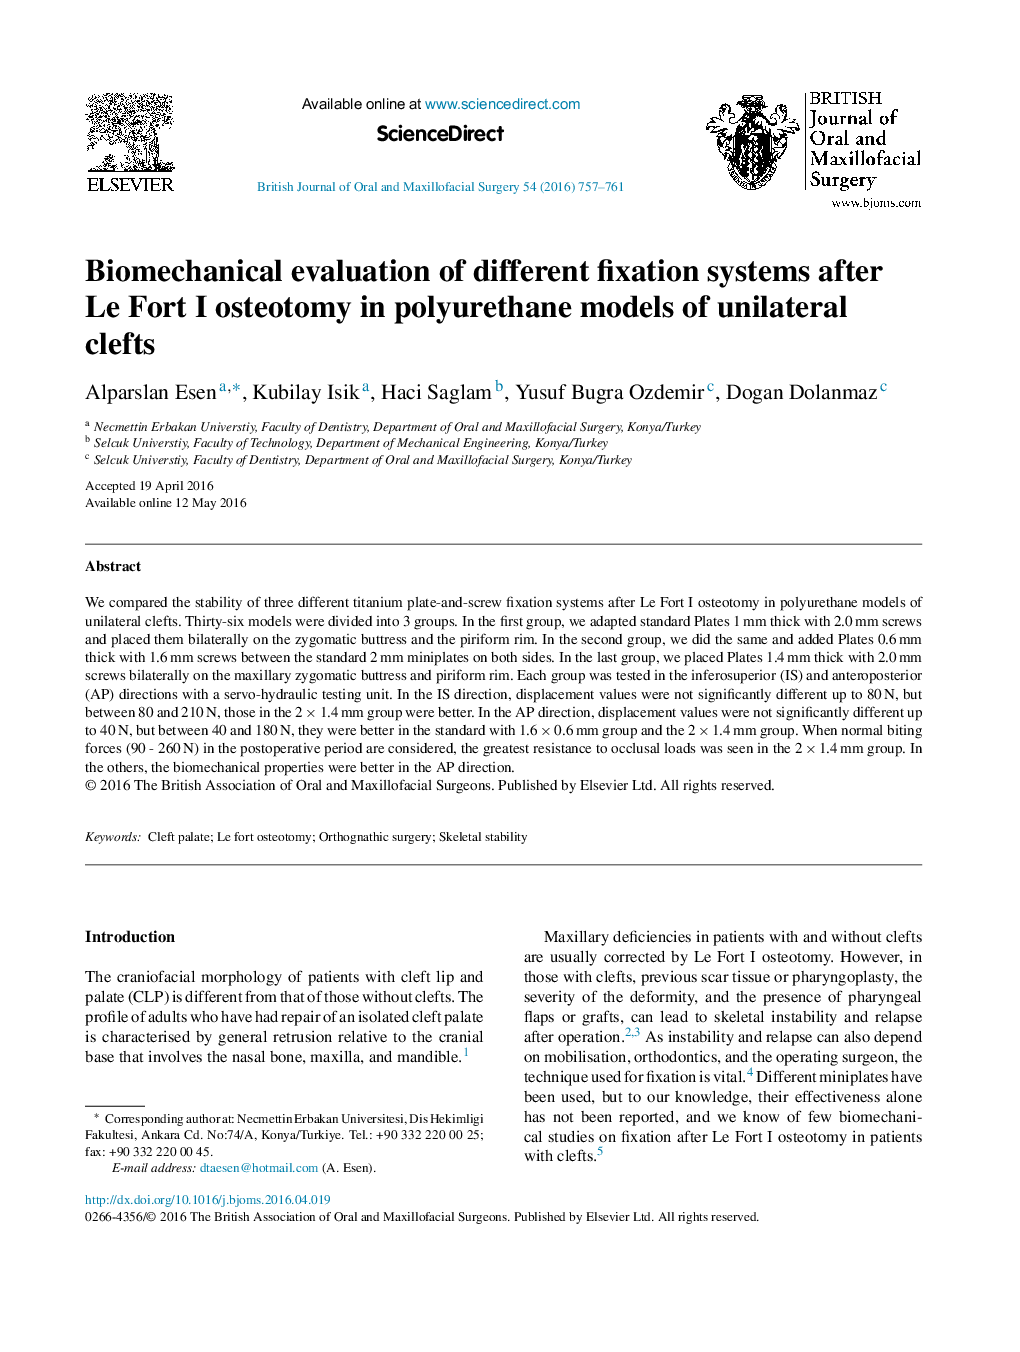 ارزیابی بیومکانیکی از سیستم های مختلف فیکشن پس از استئوتومی لو فورت I در مدل های پلی یورتان از شکاف های یک طرفه